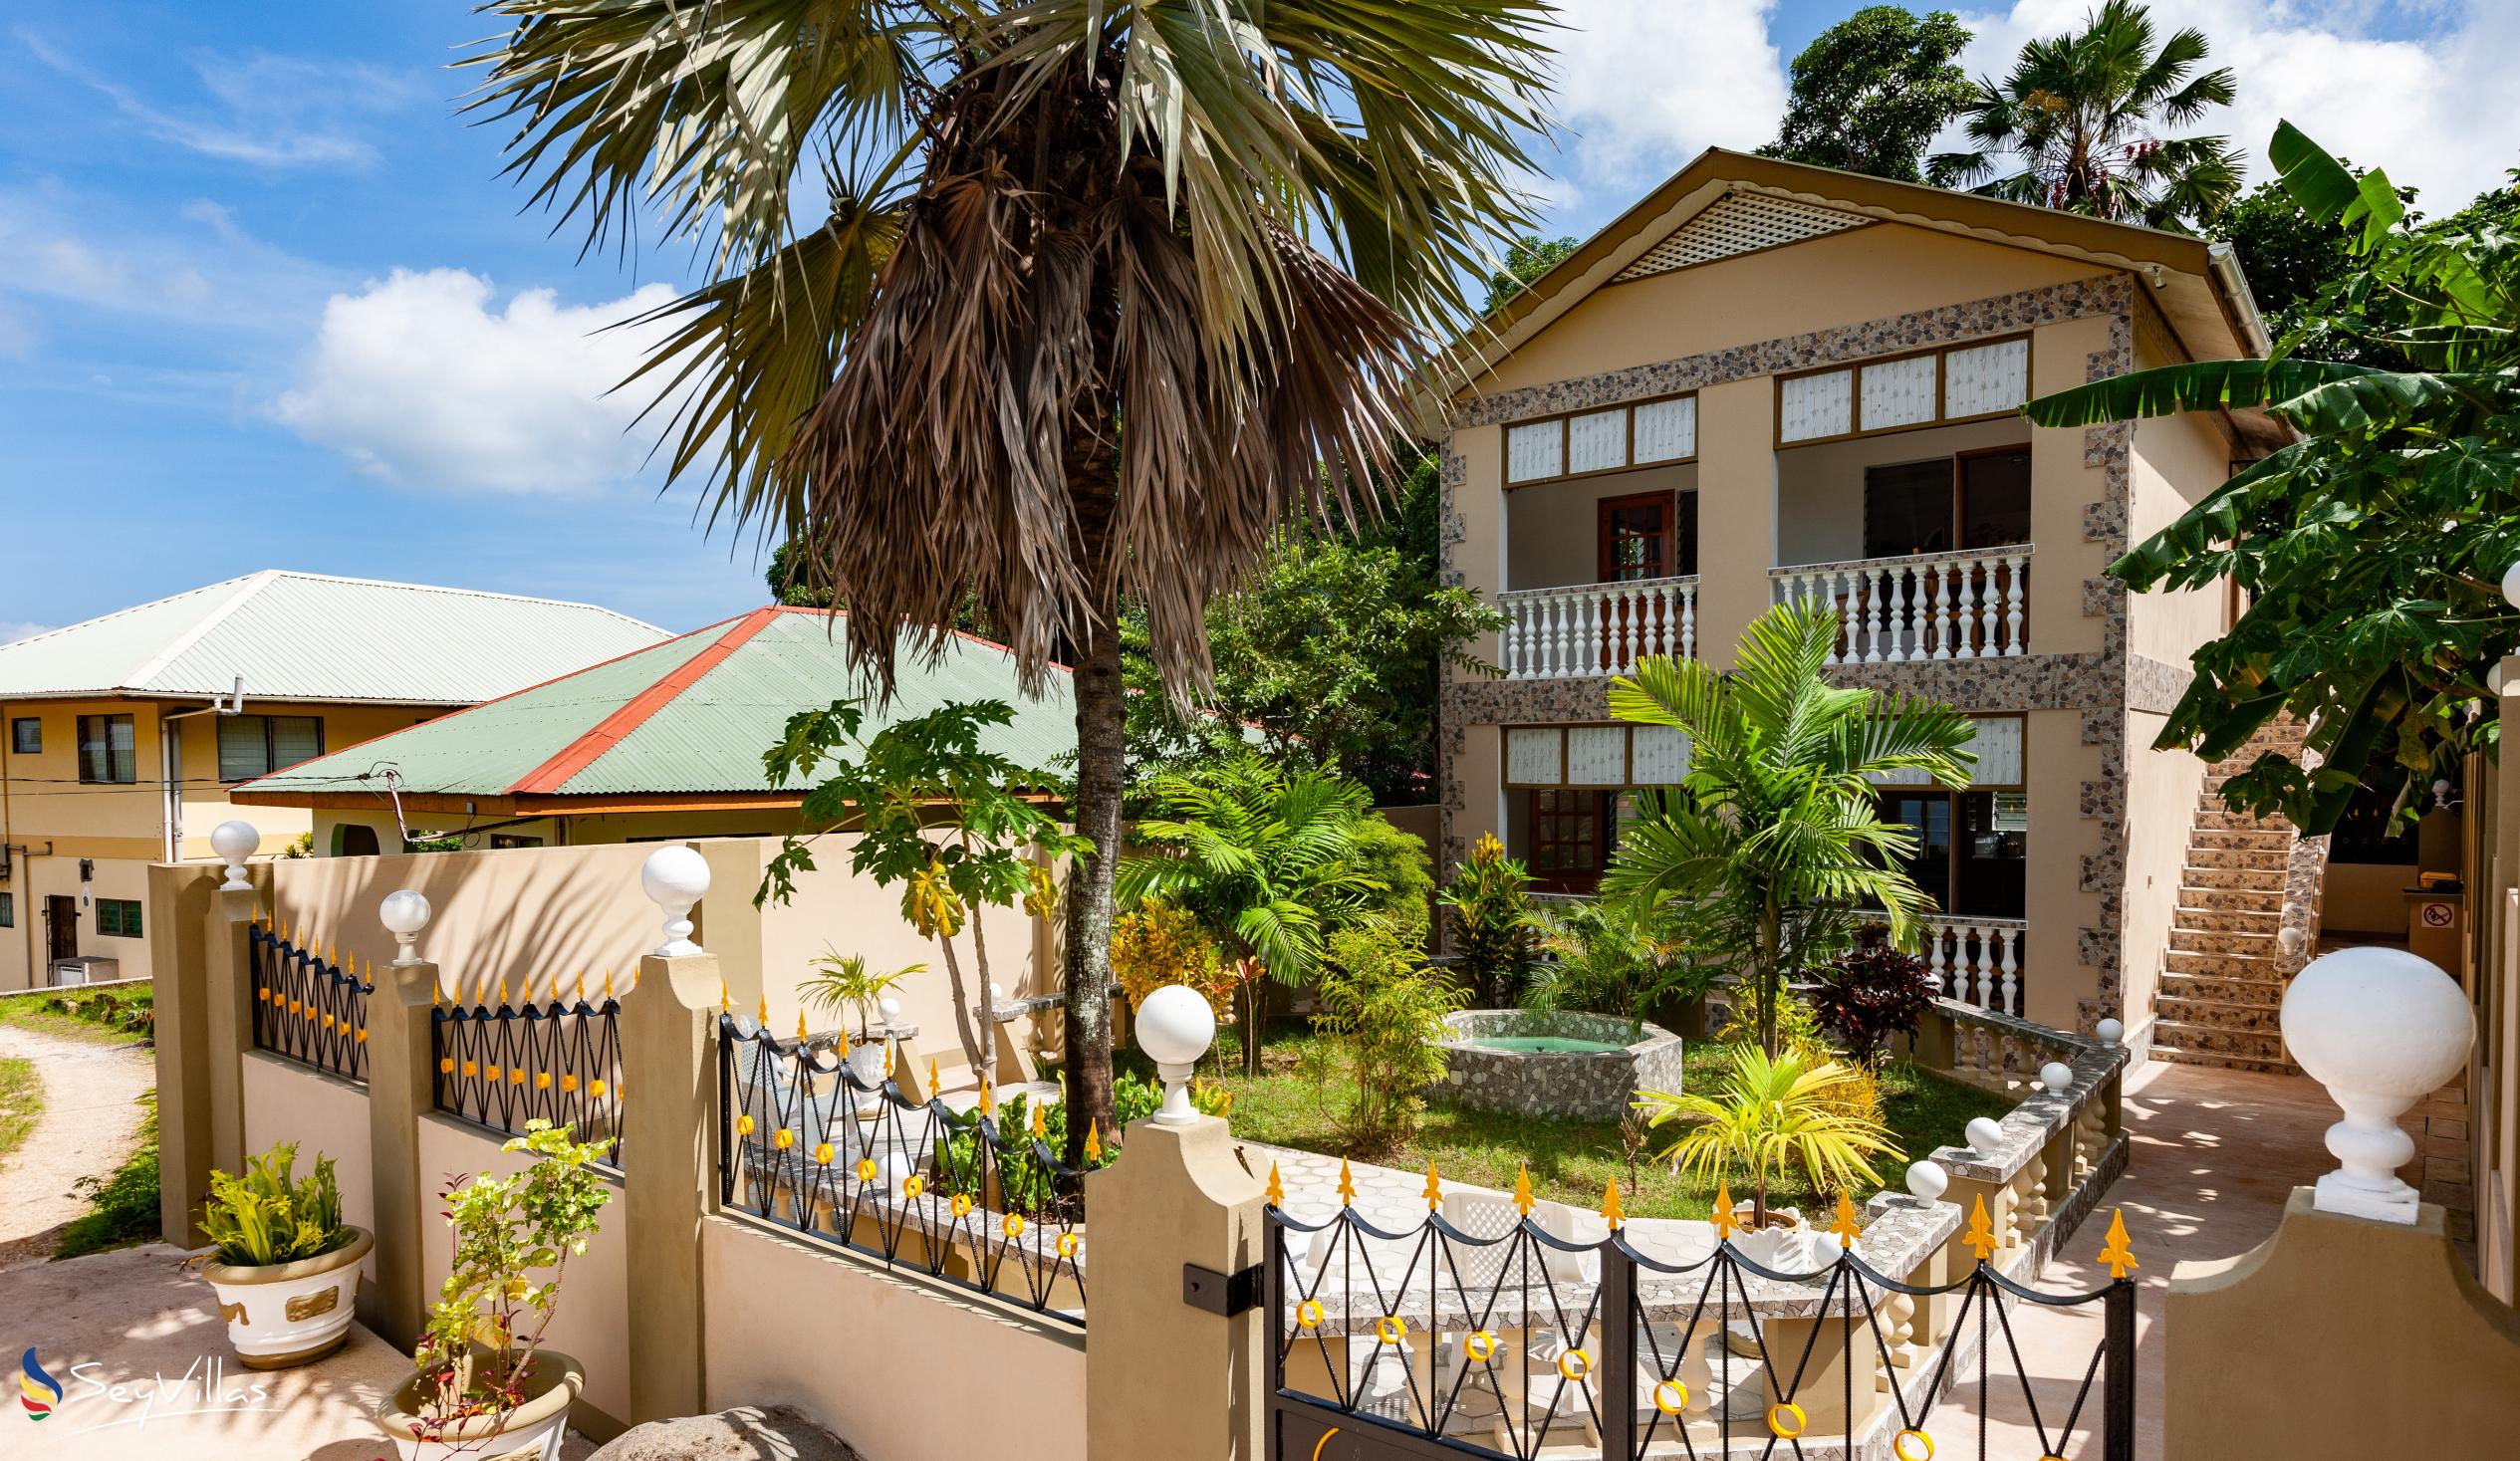 Foto 14: La Residence d'Almee - Aussenbereich - Praslin (Seychellen)